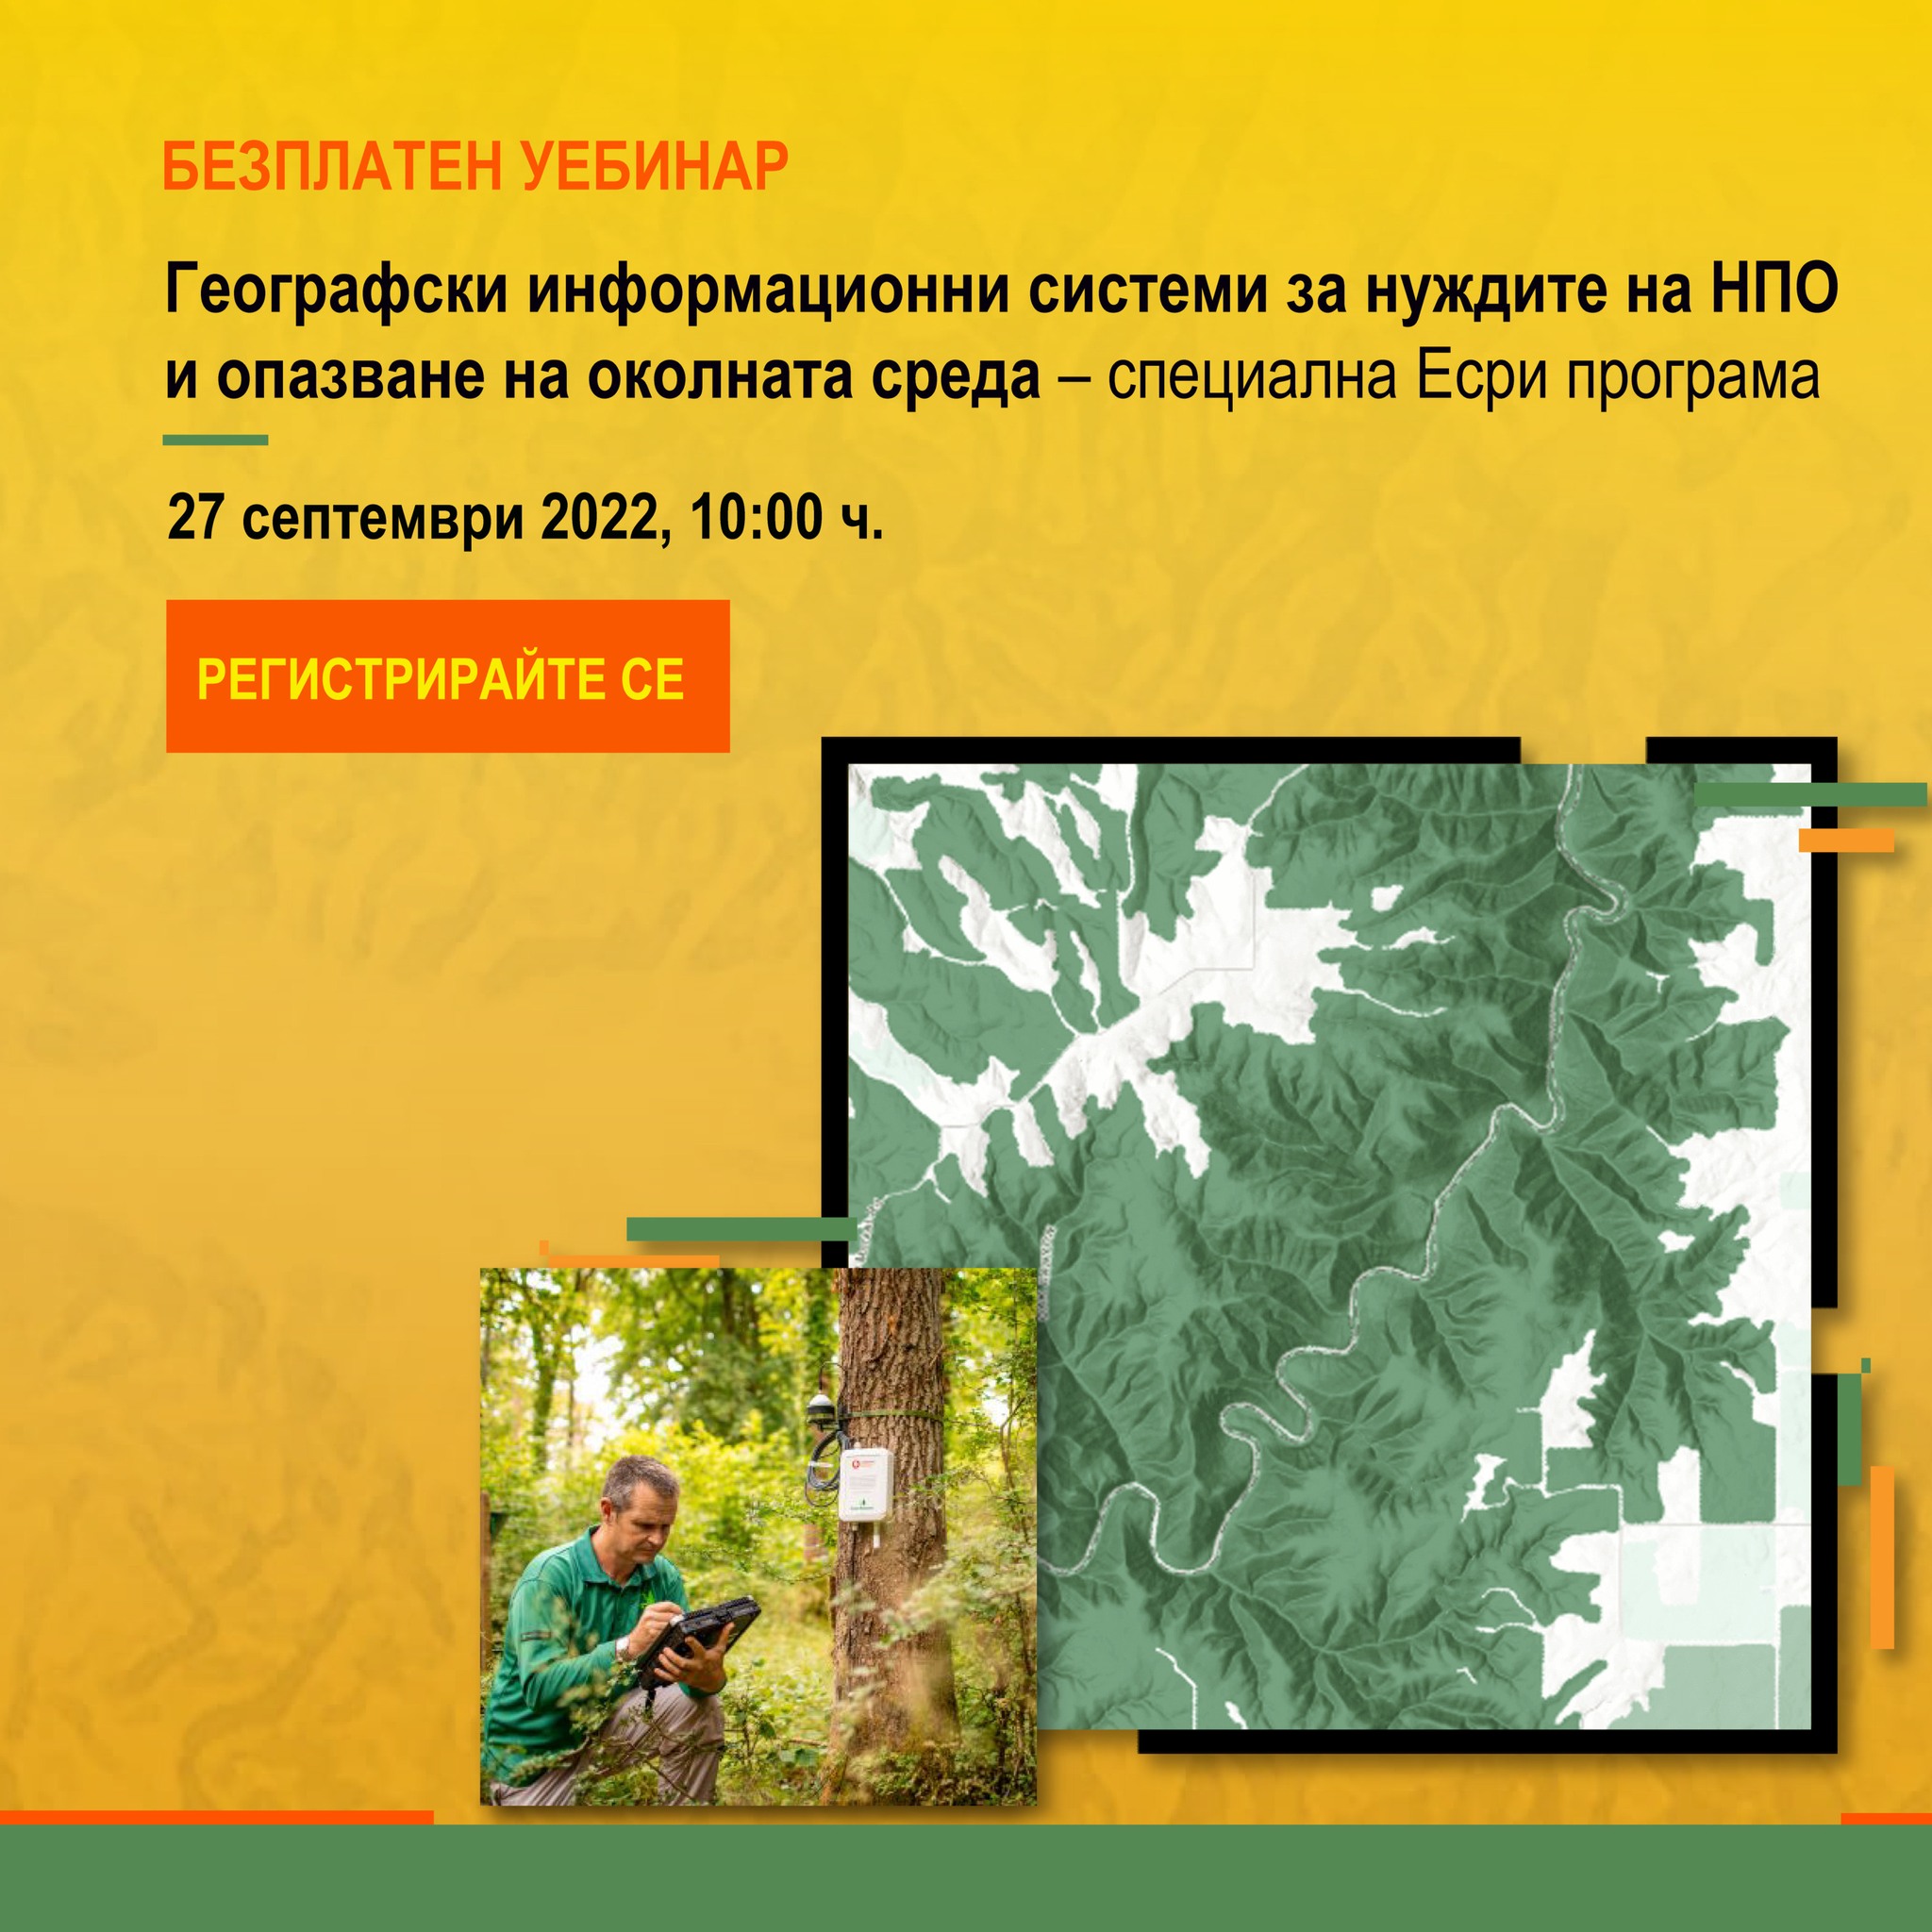 Географски информационни системи за нуждите на НПО и опазване на околната среда – специална ЕСРИ програма. Безплатен уебинар.